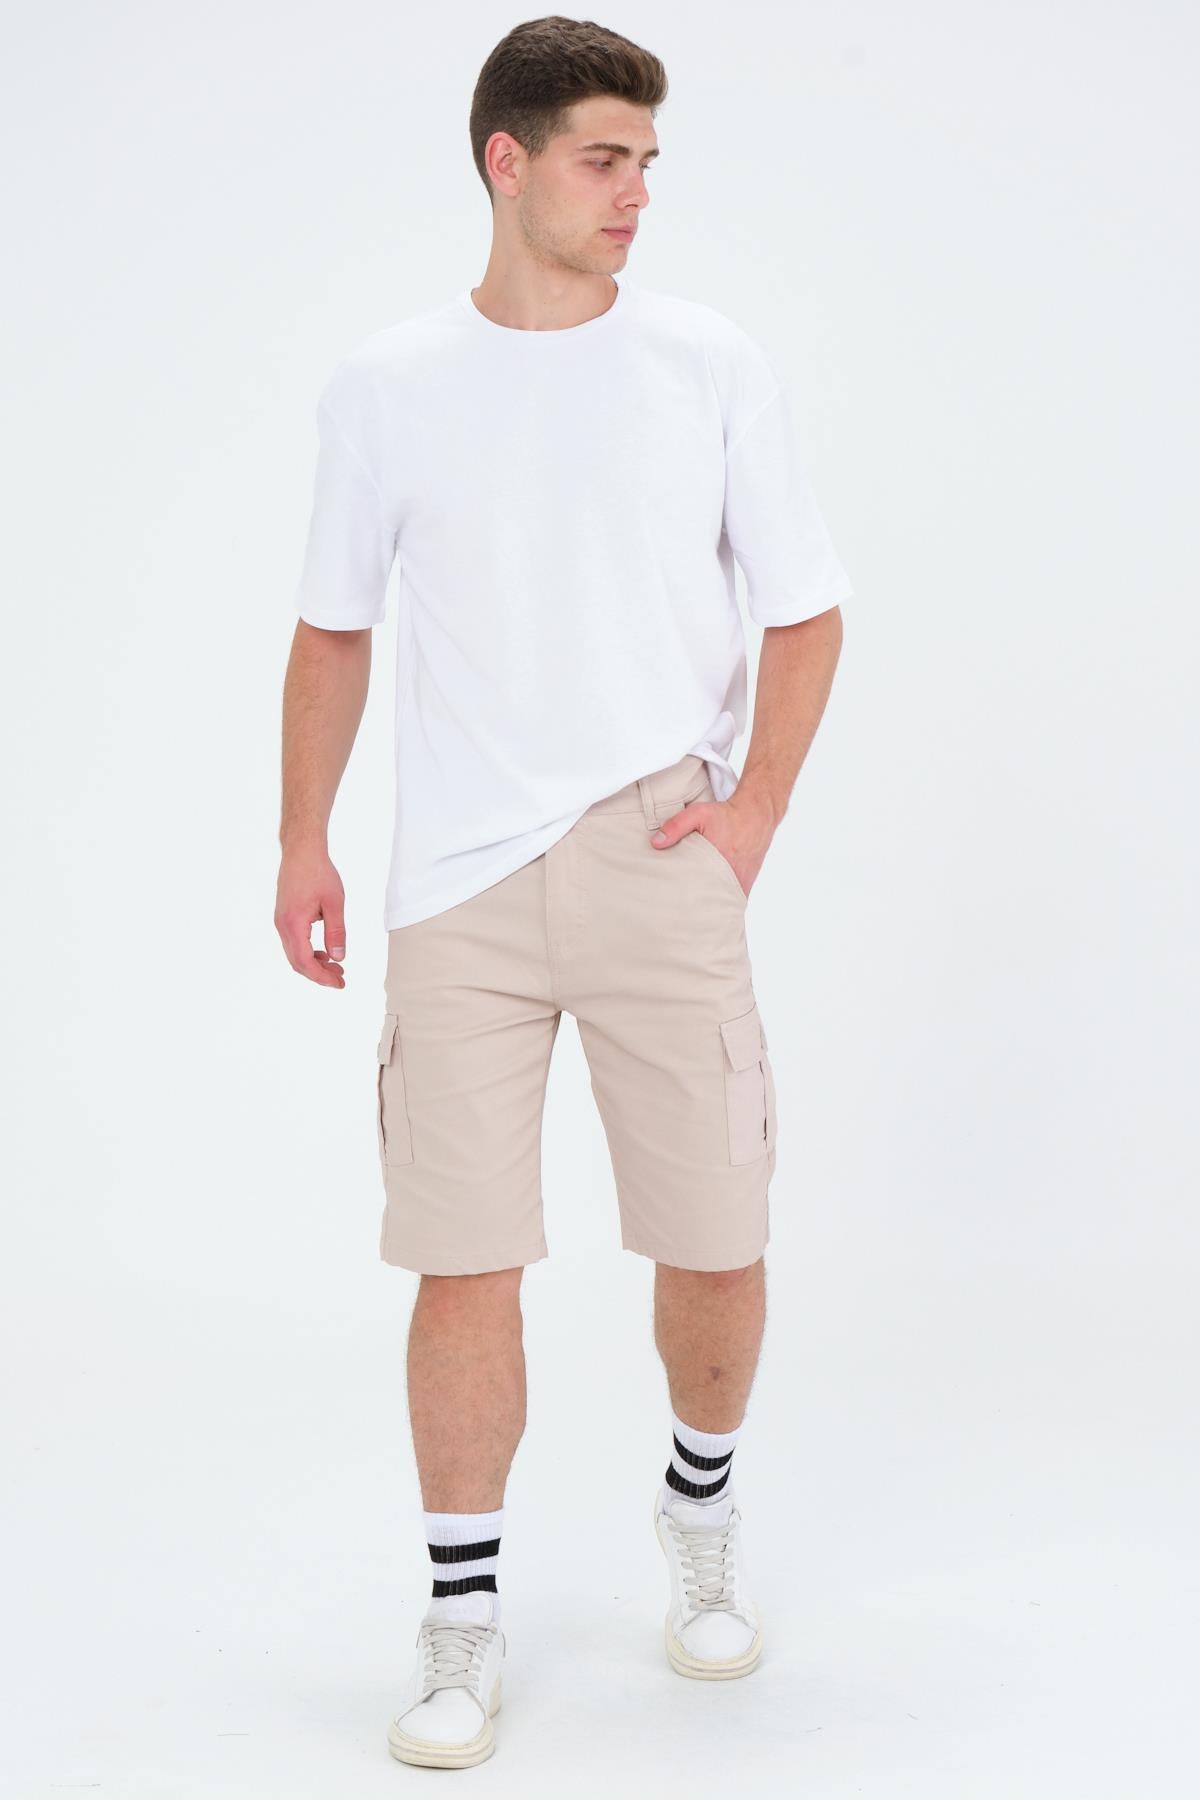 Oversizle fit cotton short sleeve Basic Unisex Crew Neck Unisex T -shirt